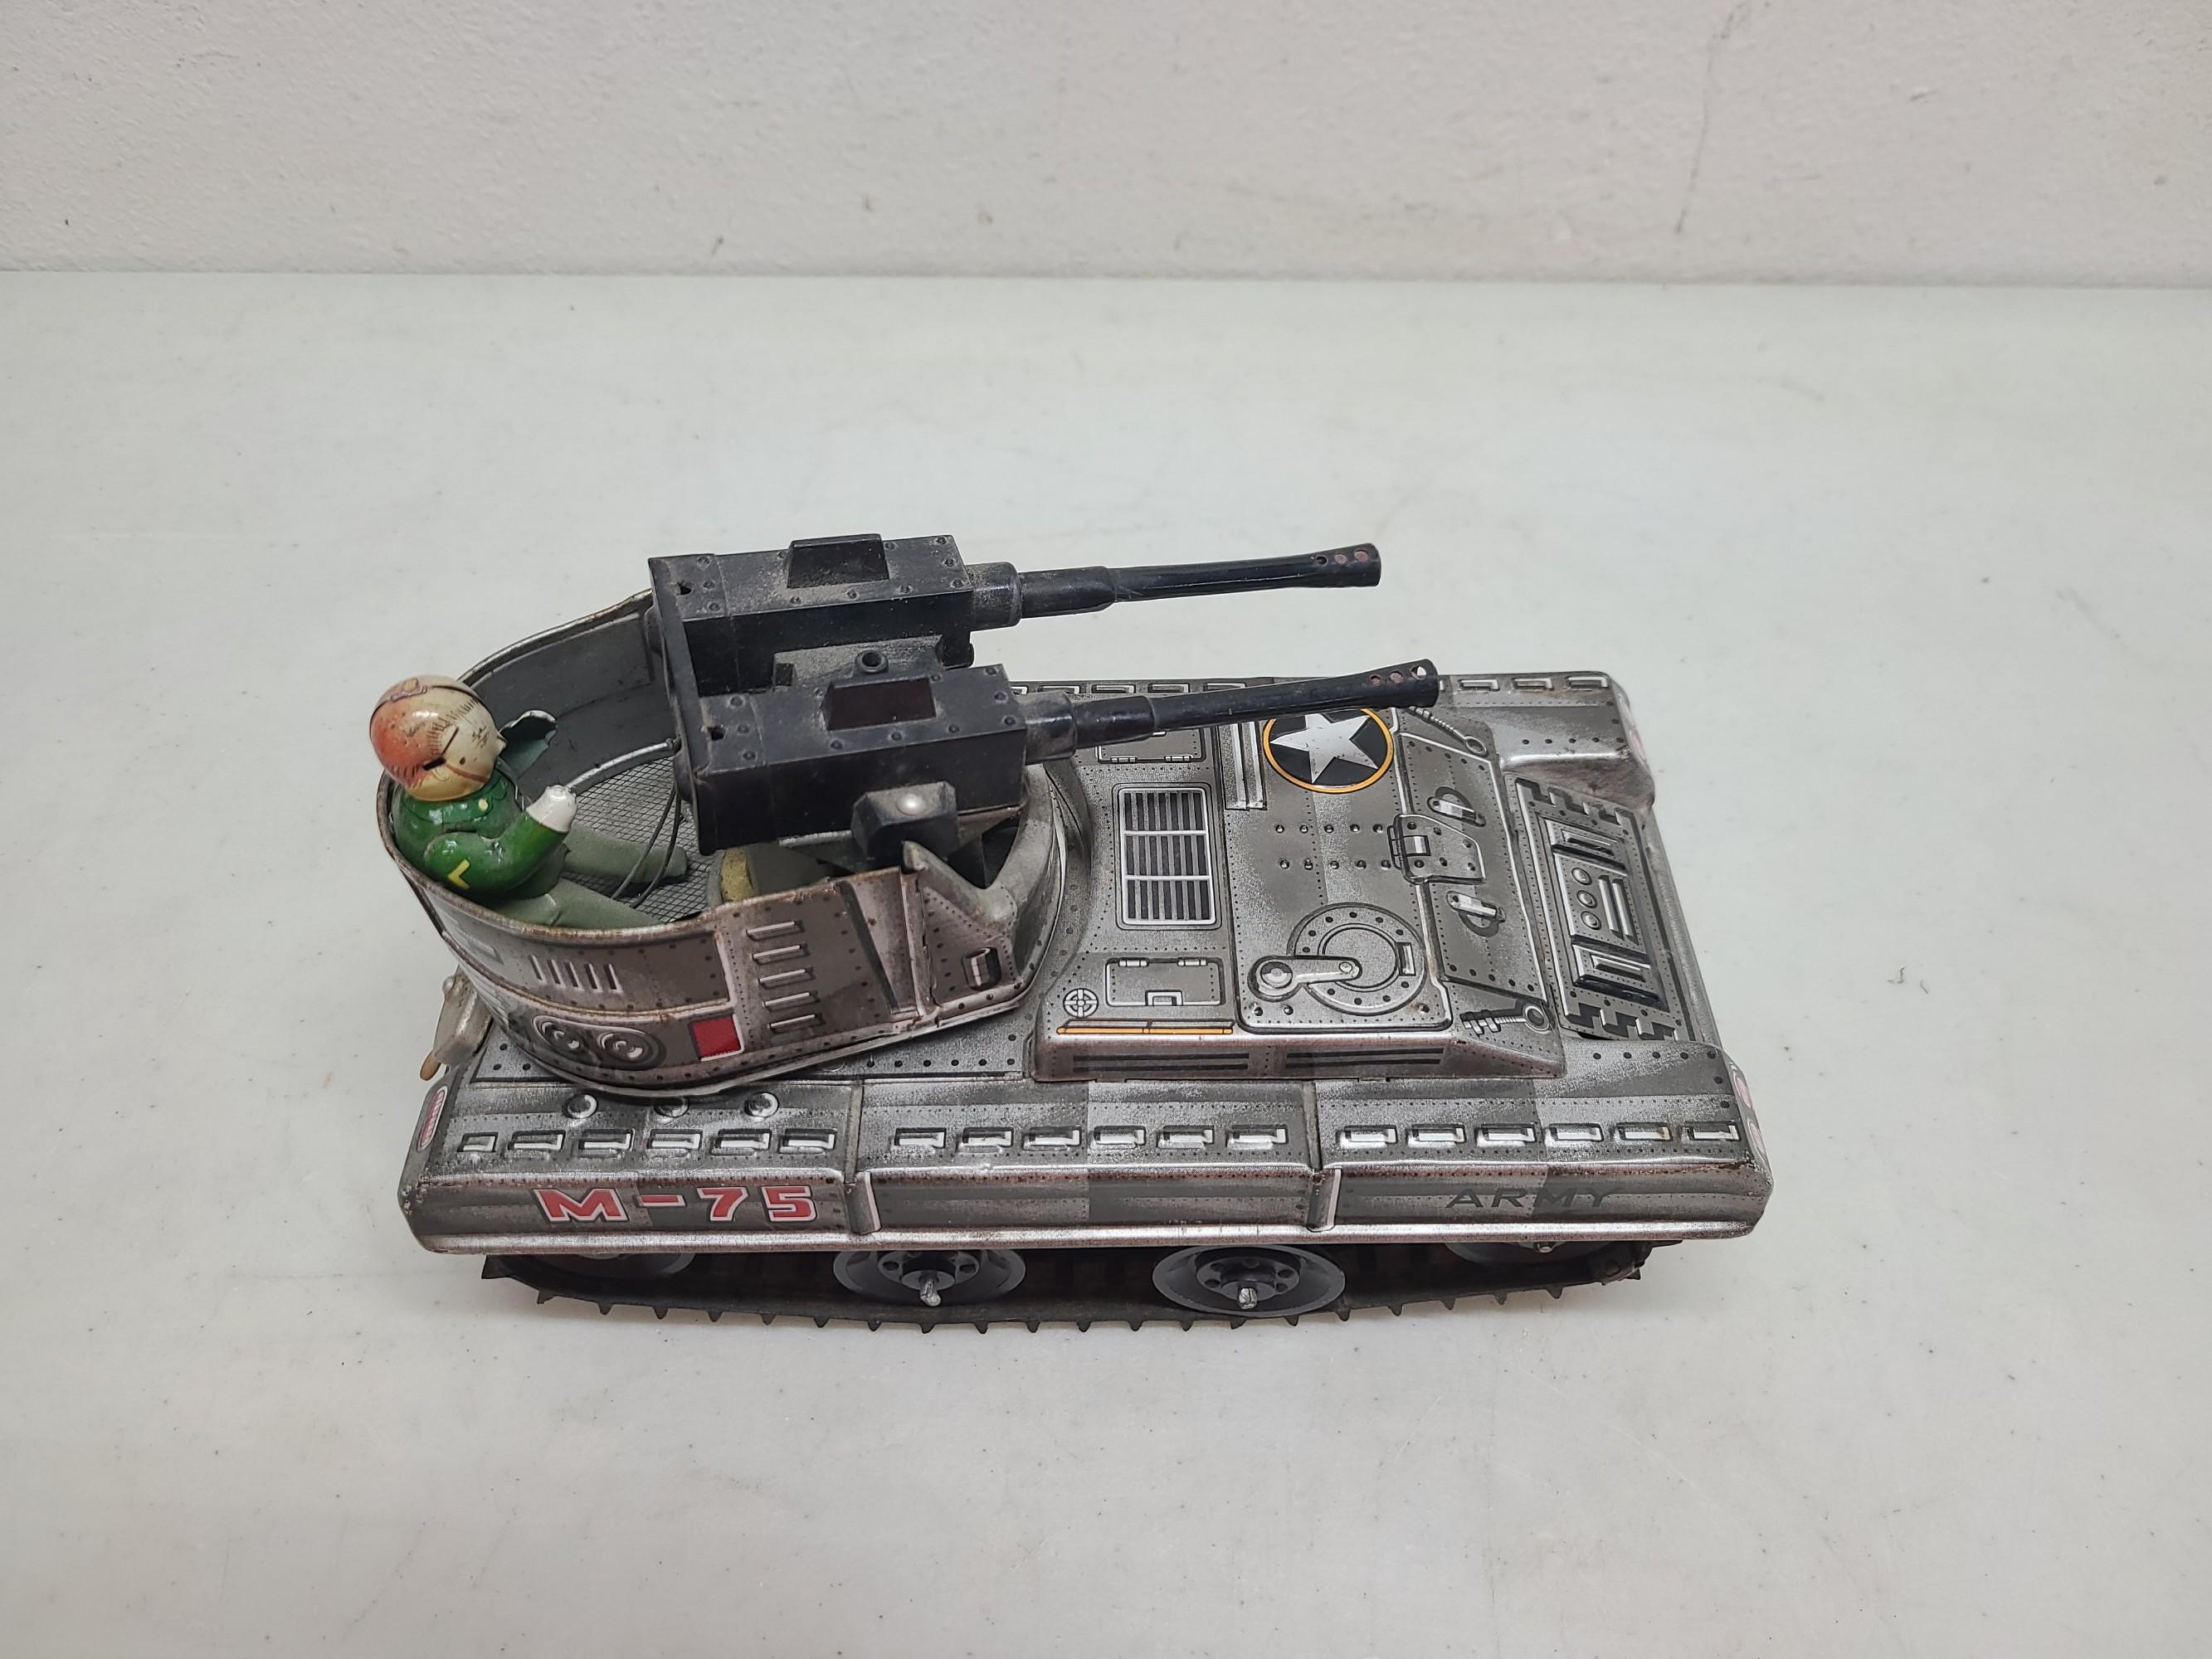 Cragstan M-75 Anti-Aircraft Battery Op Tin Toy